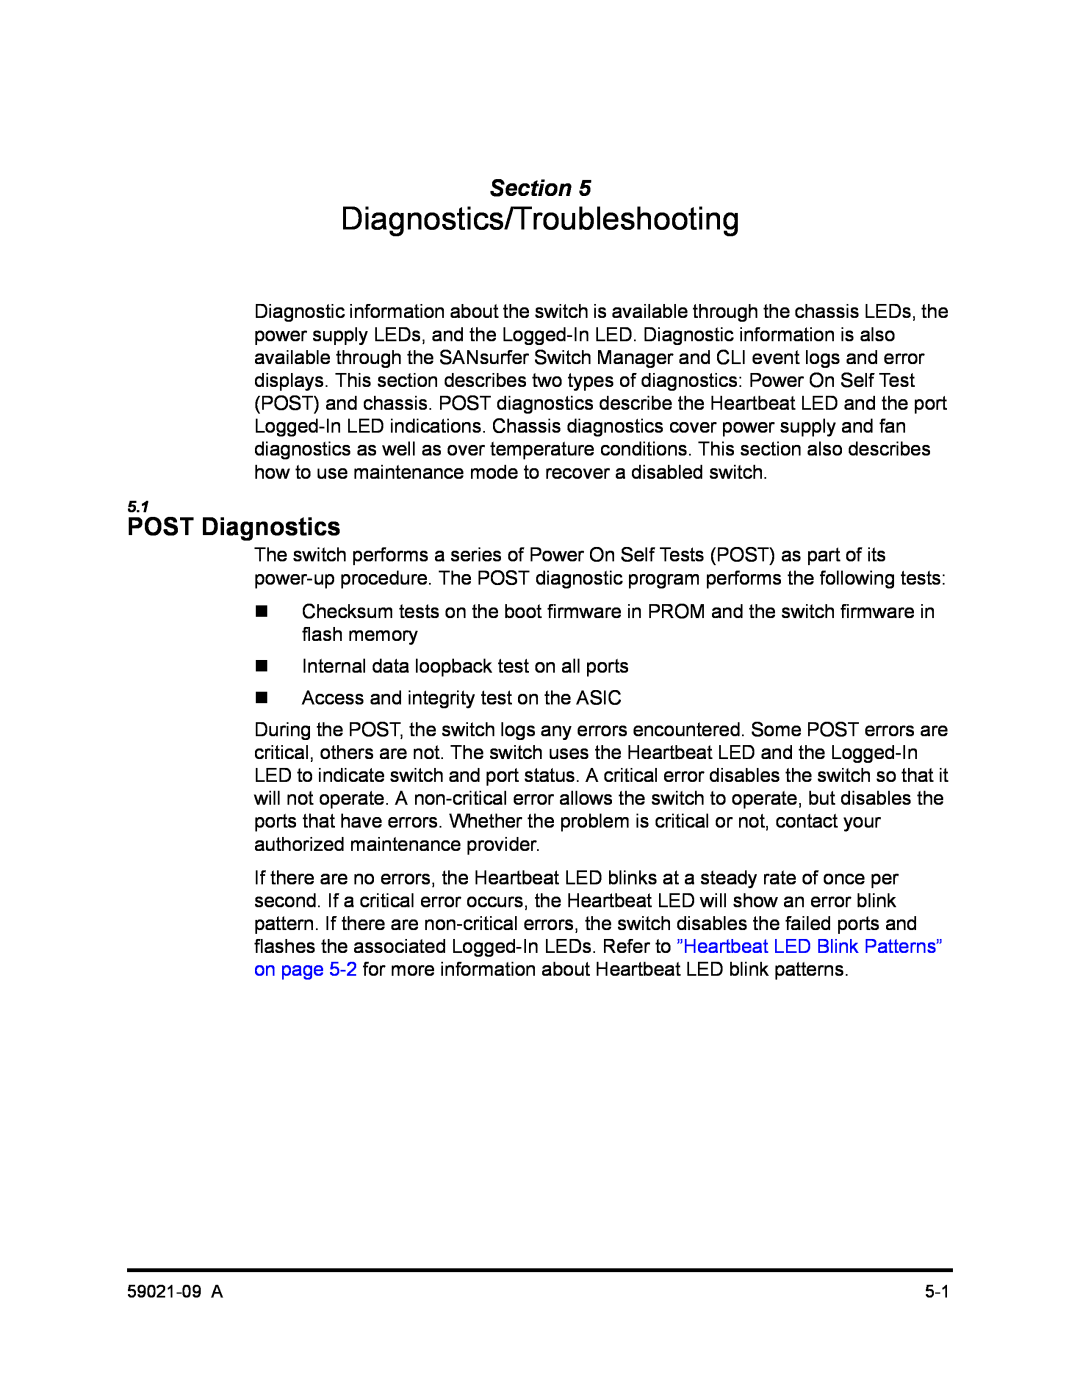 Q-Logic SB2A-16B, QLA2342 manual Diagnostics/Troubleshooting, POST Diagnostics, Section 